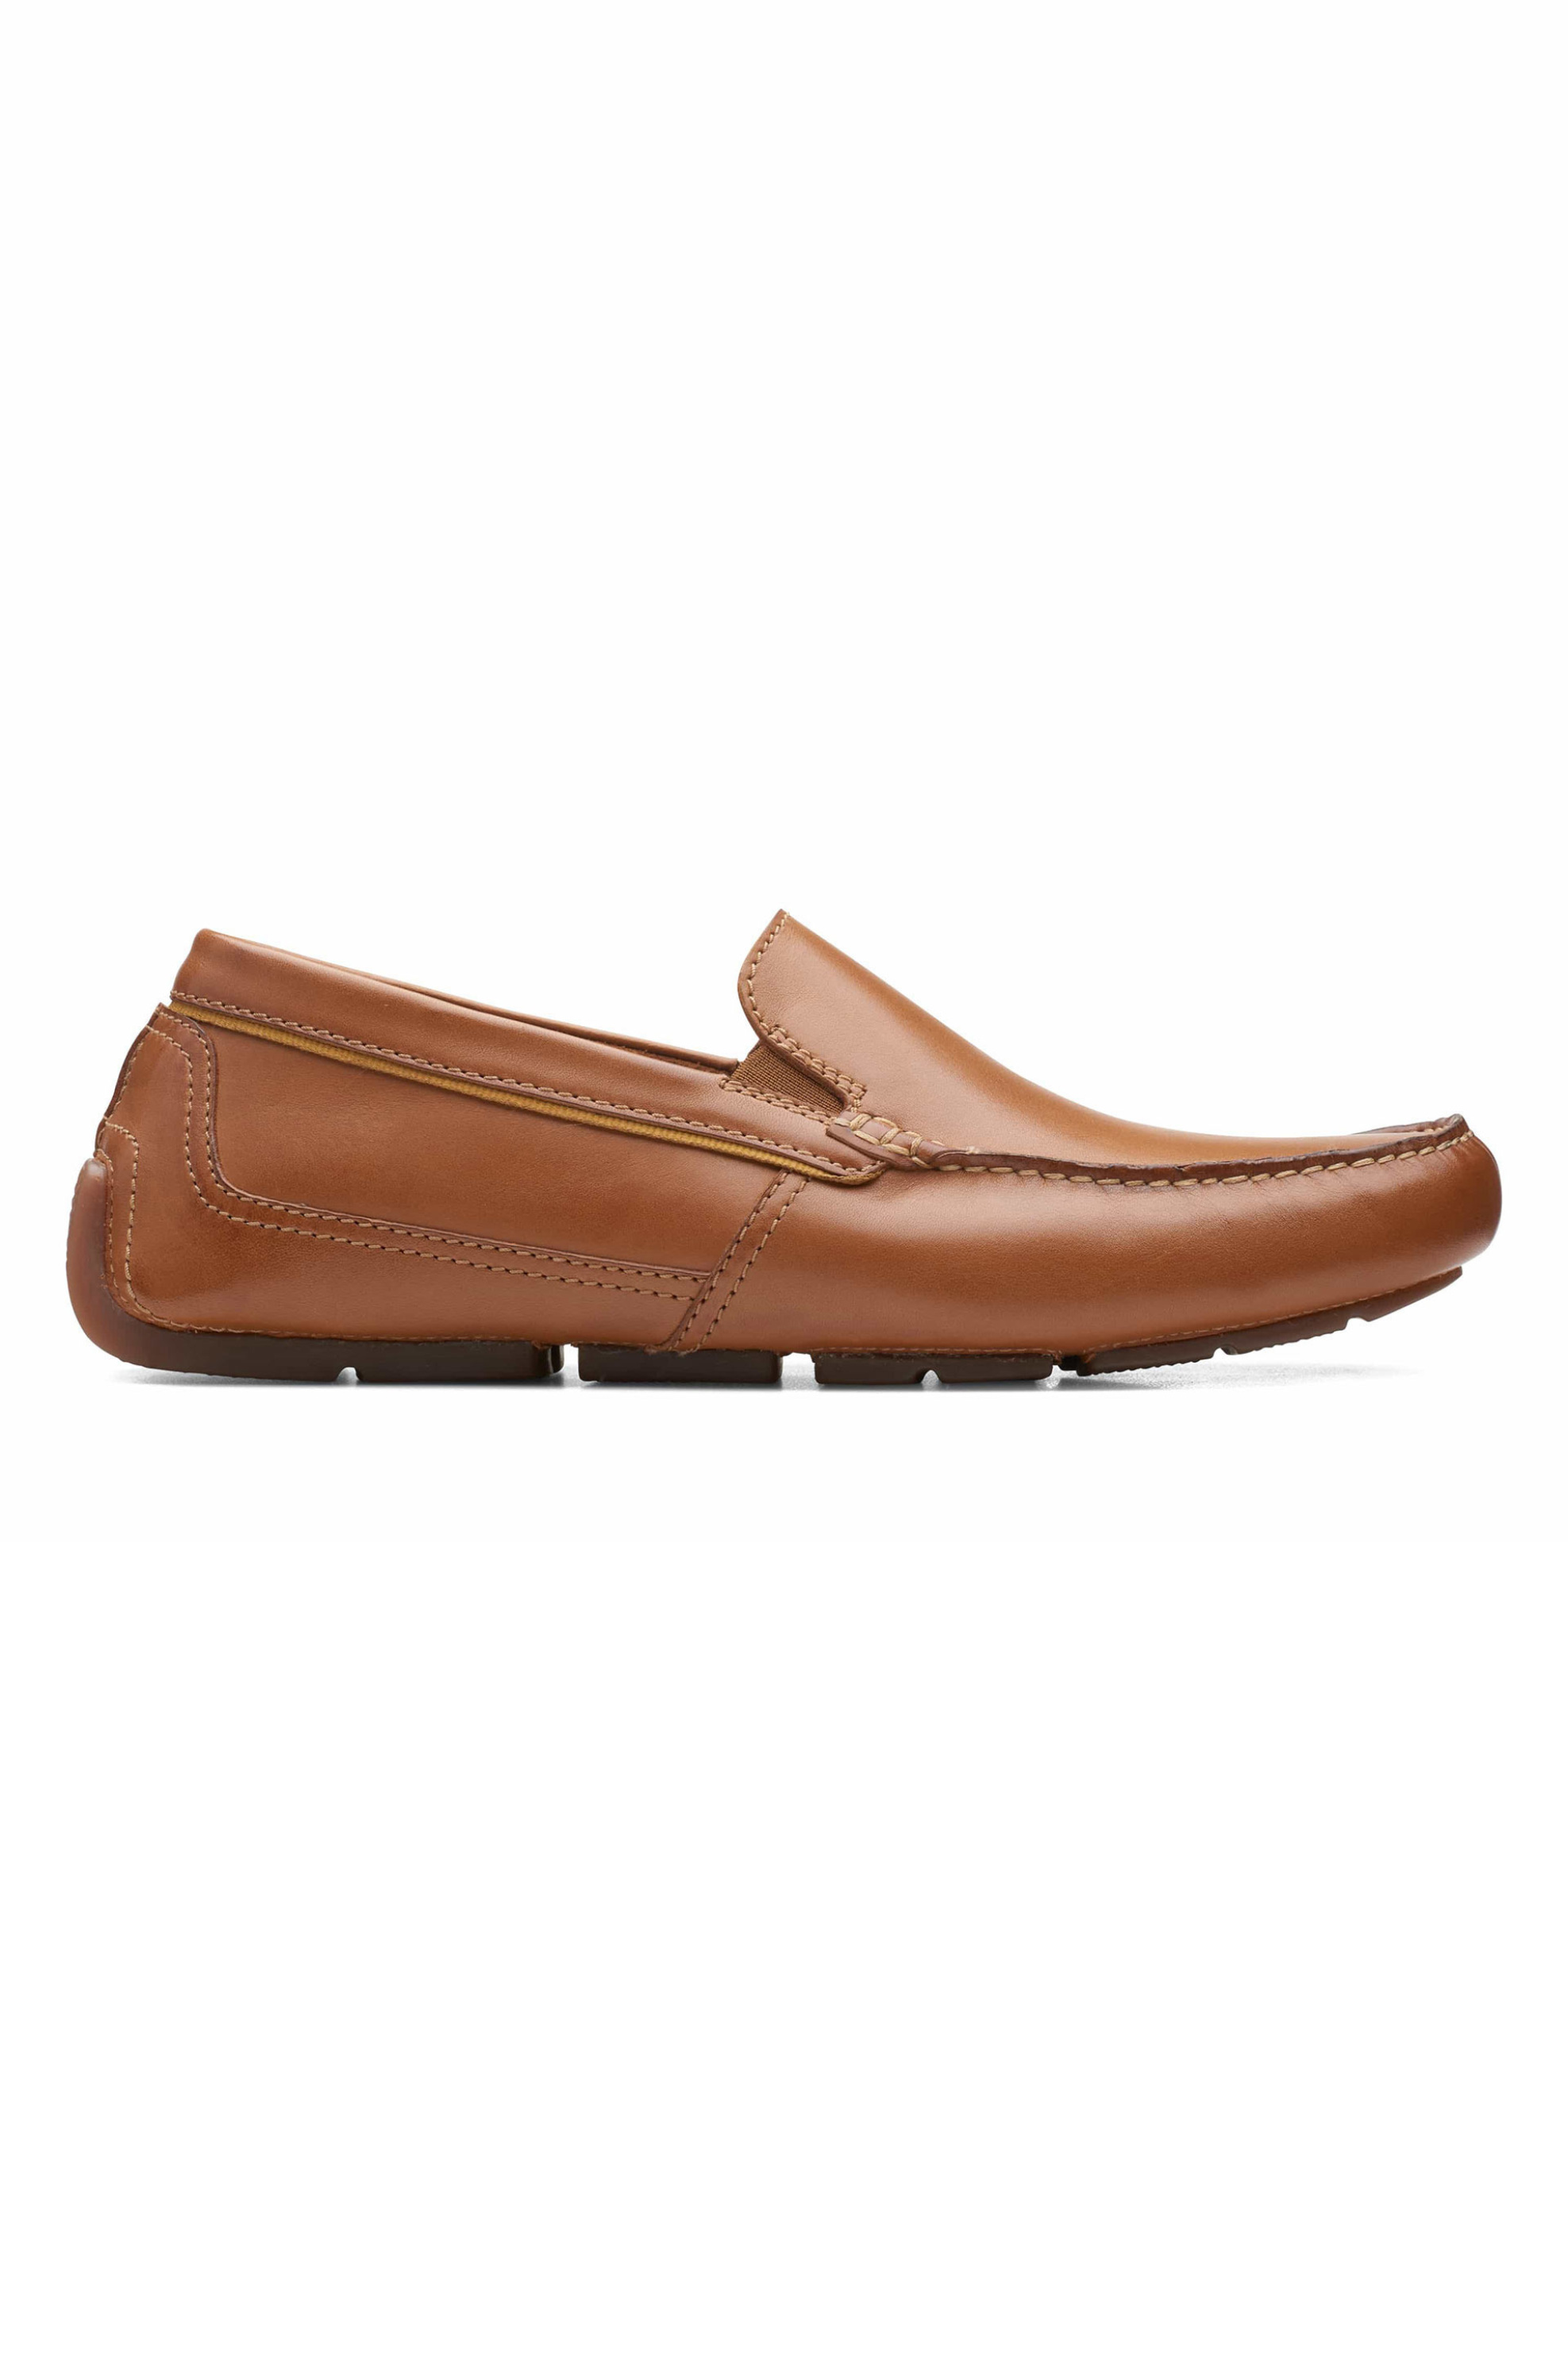 Ανδρική Μόδα > Ανδρικά Παπούτσια > Ανδρικά Μοκασίνια & Loafers Clarks ανδρικά loafers μονόχρωμα "Markman Plain" - 26163544 Ταμπά